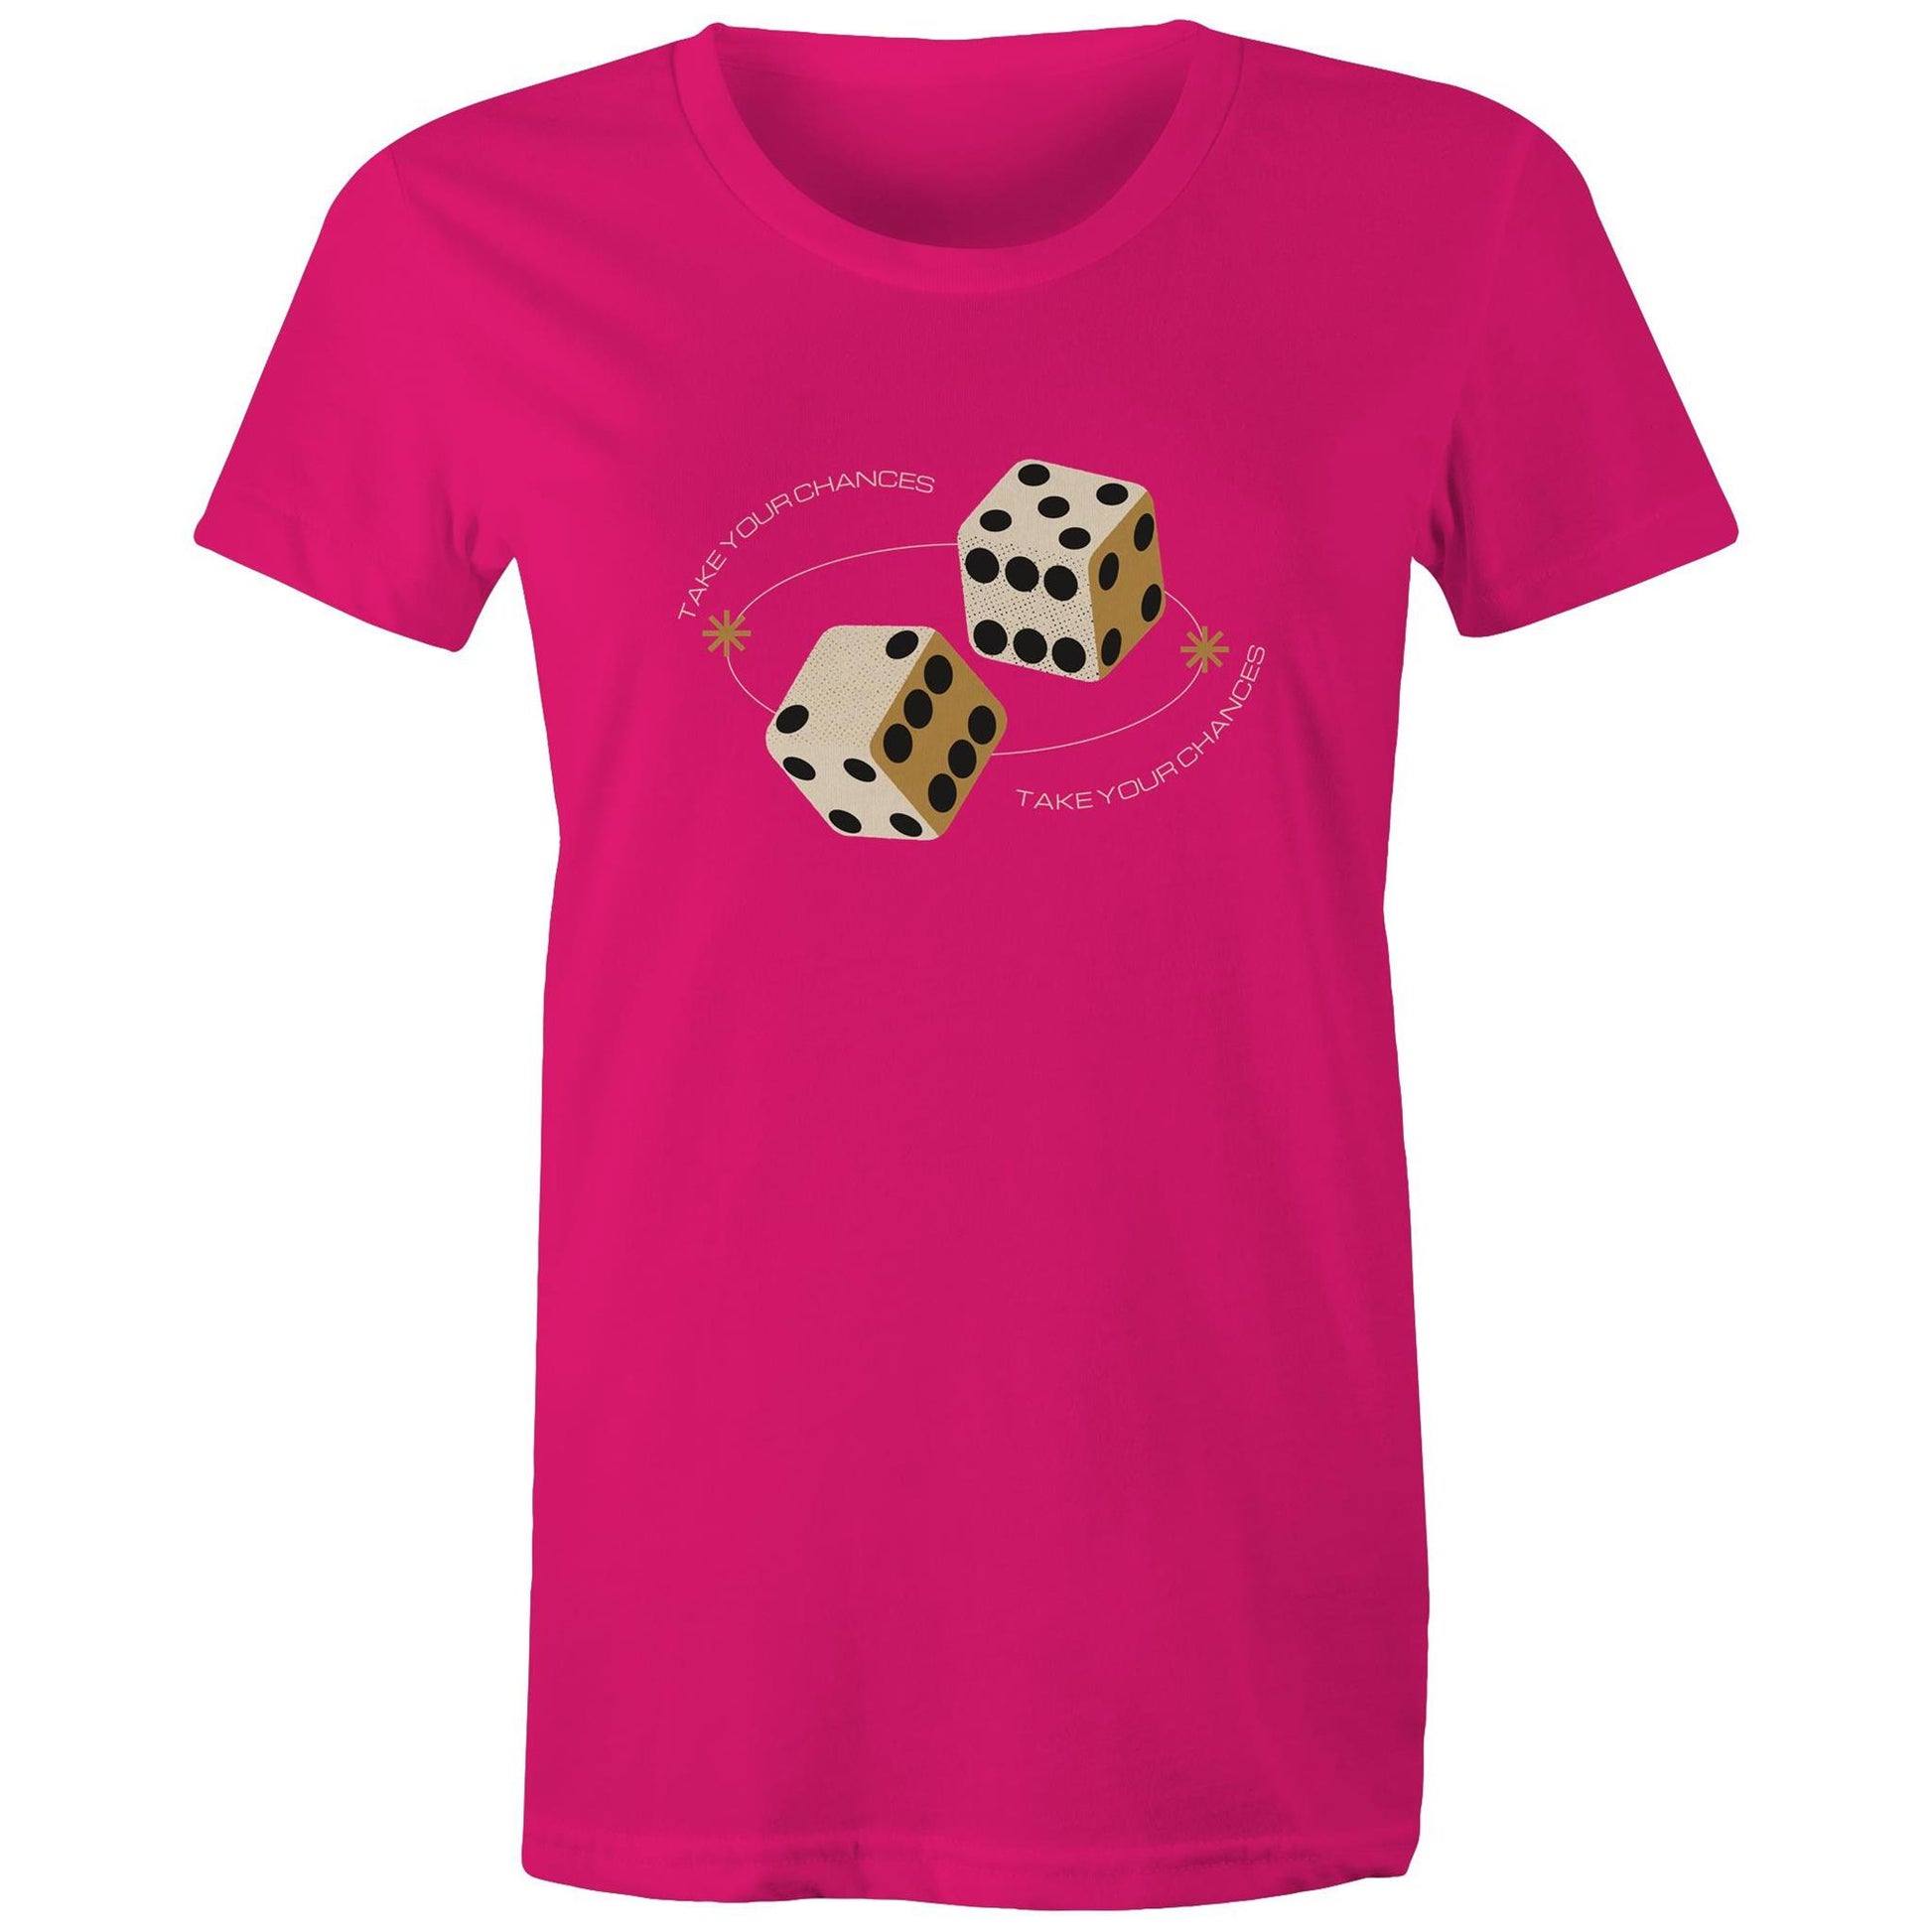 Dice, Take Your Chances - Womens T-shirt Fuchsia Womens T-shirt Games